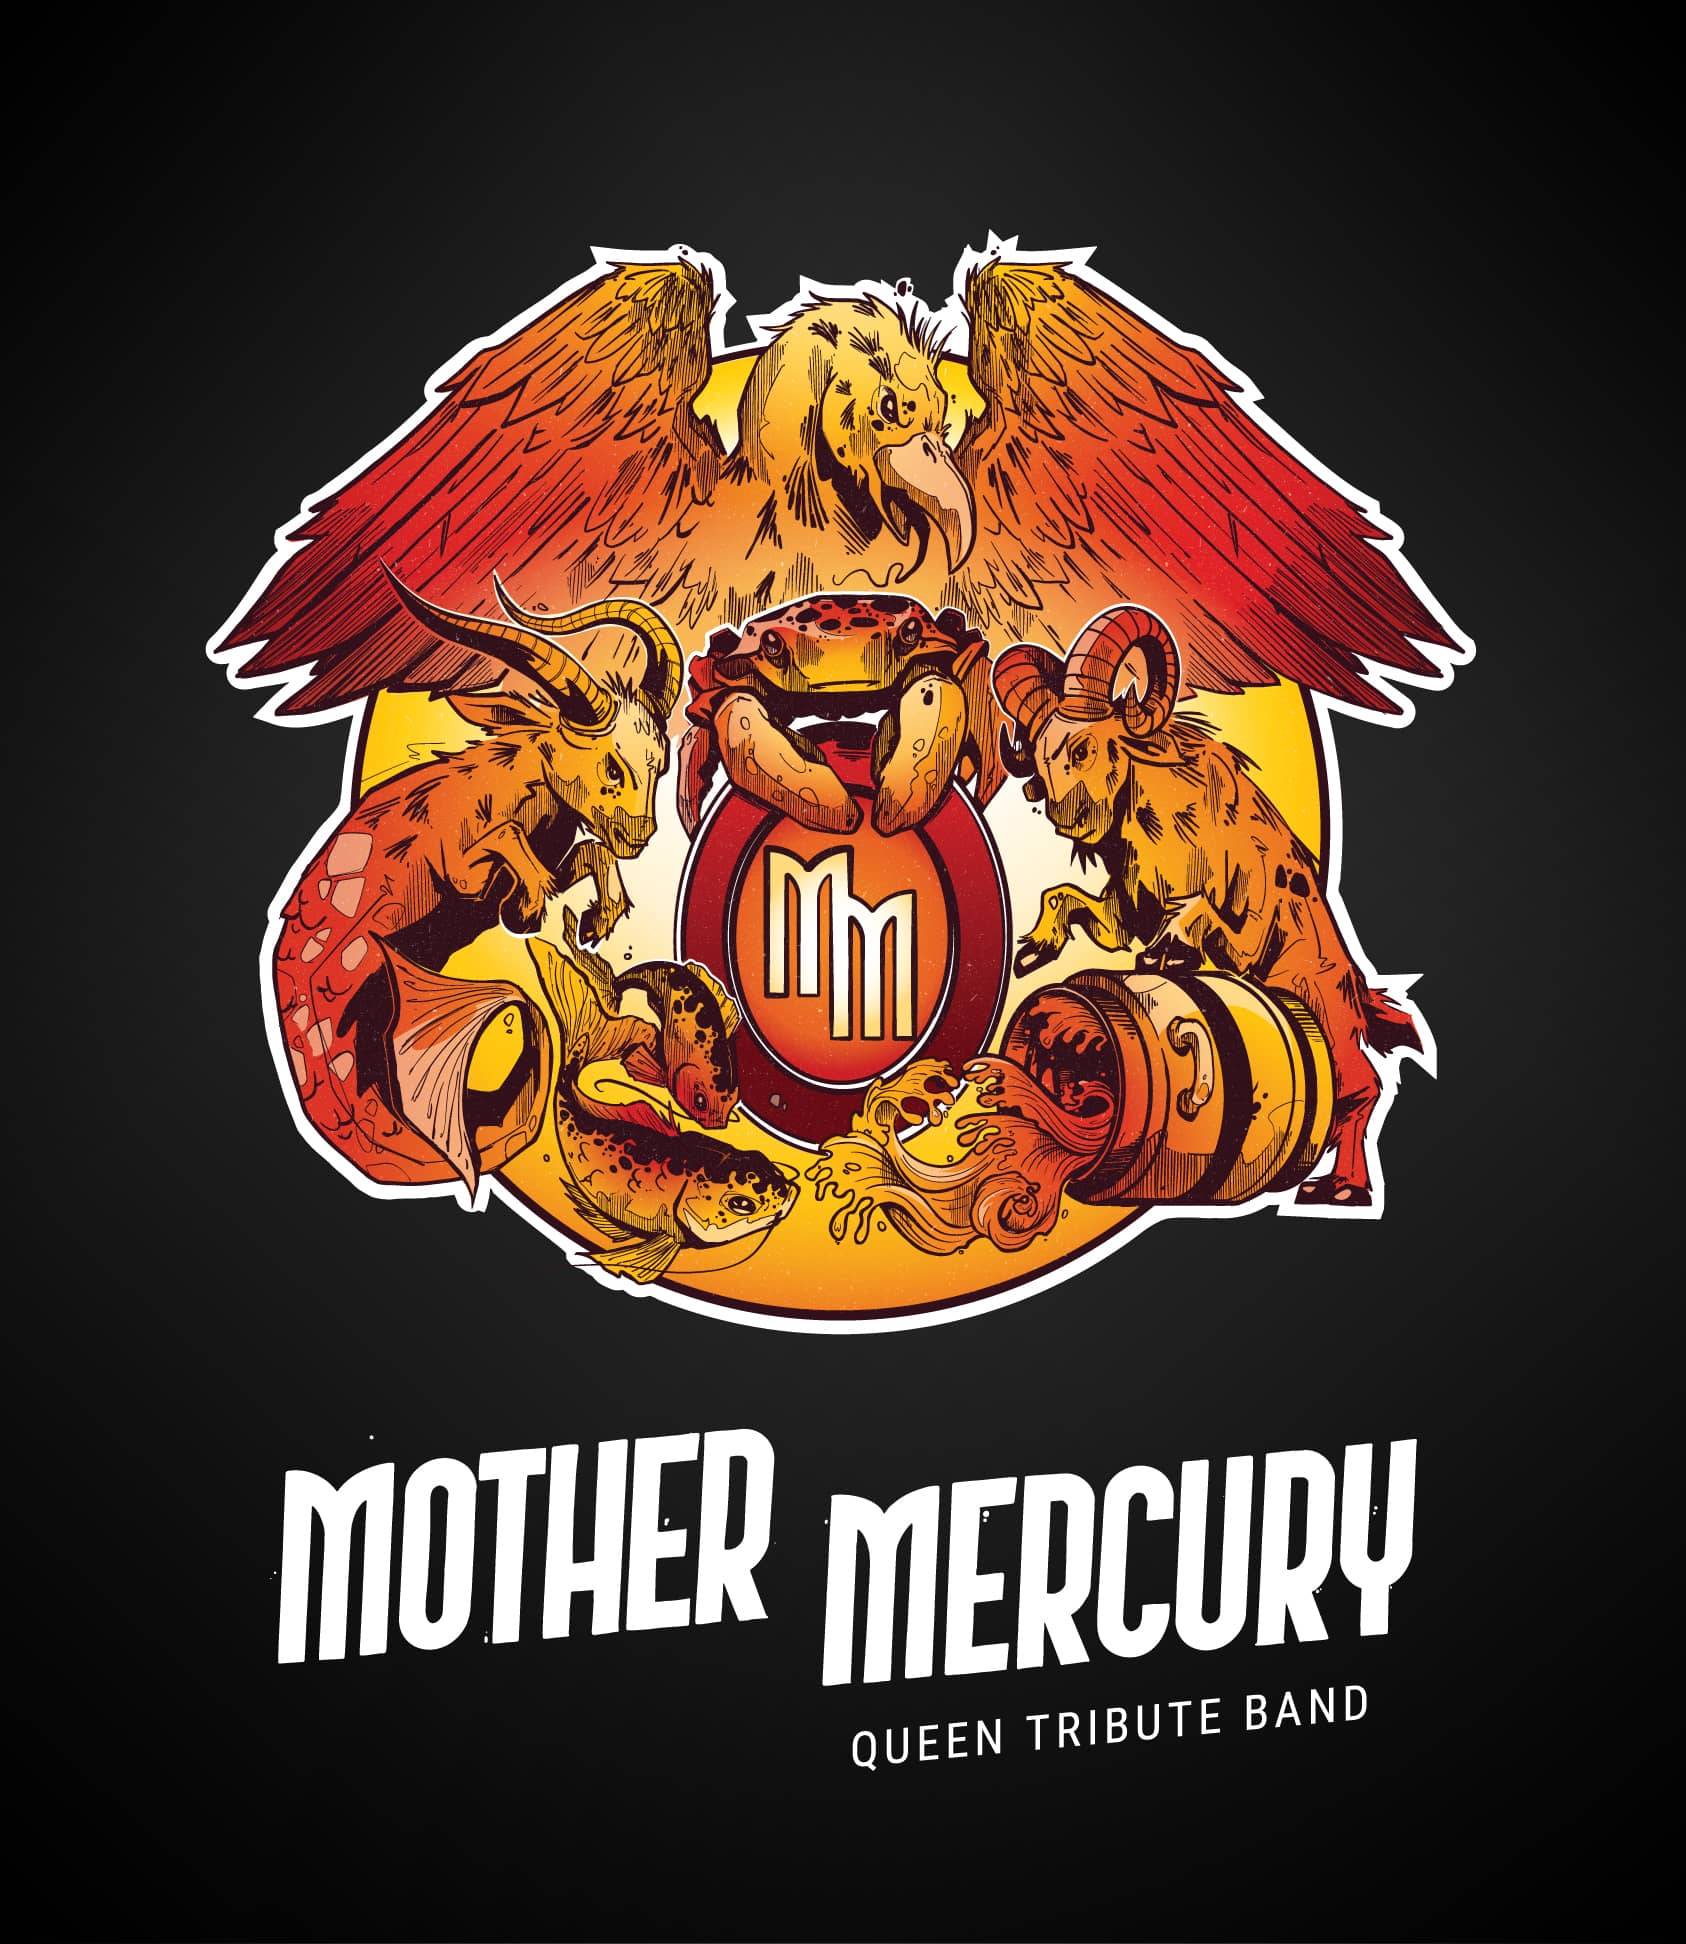 Mother Mercury - Acoustic set